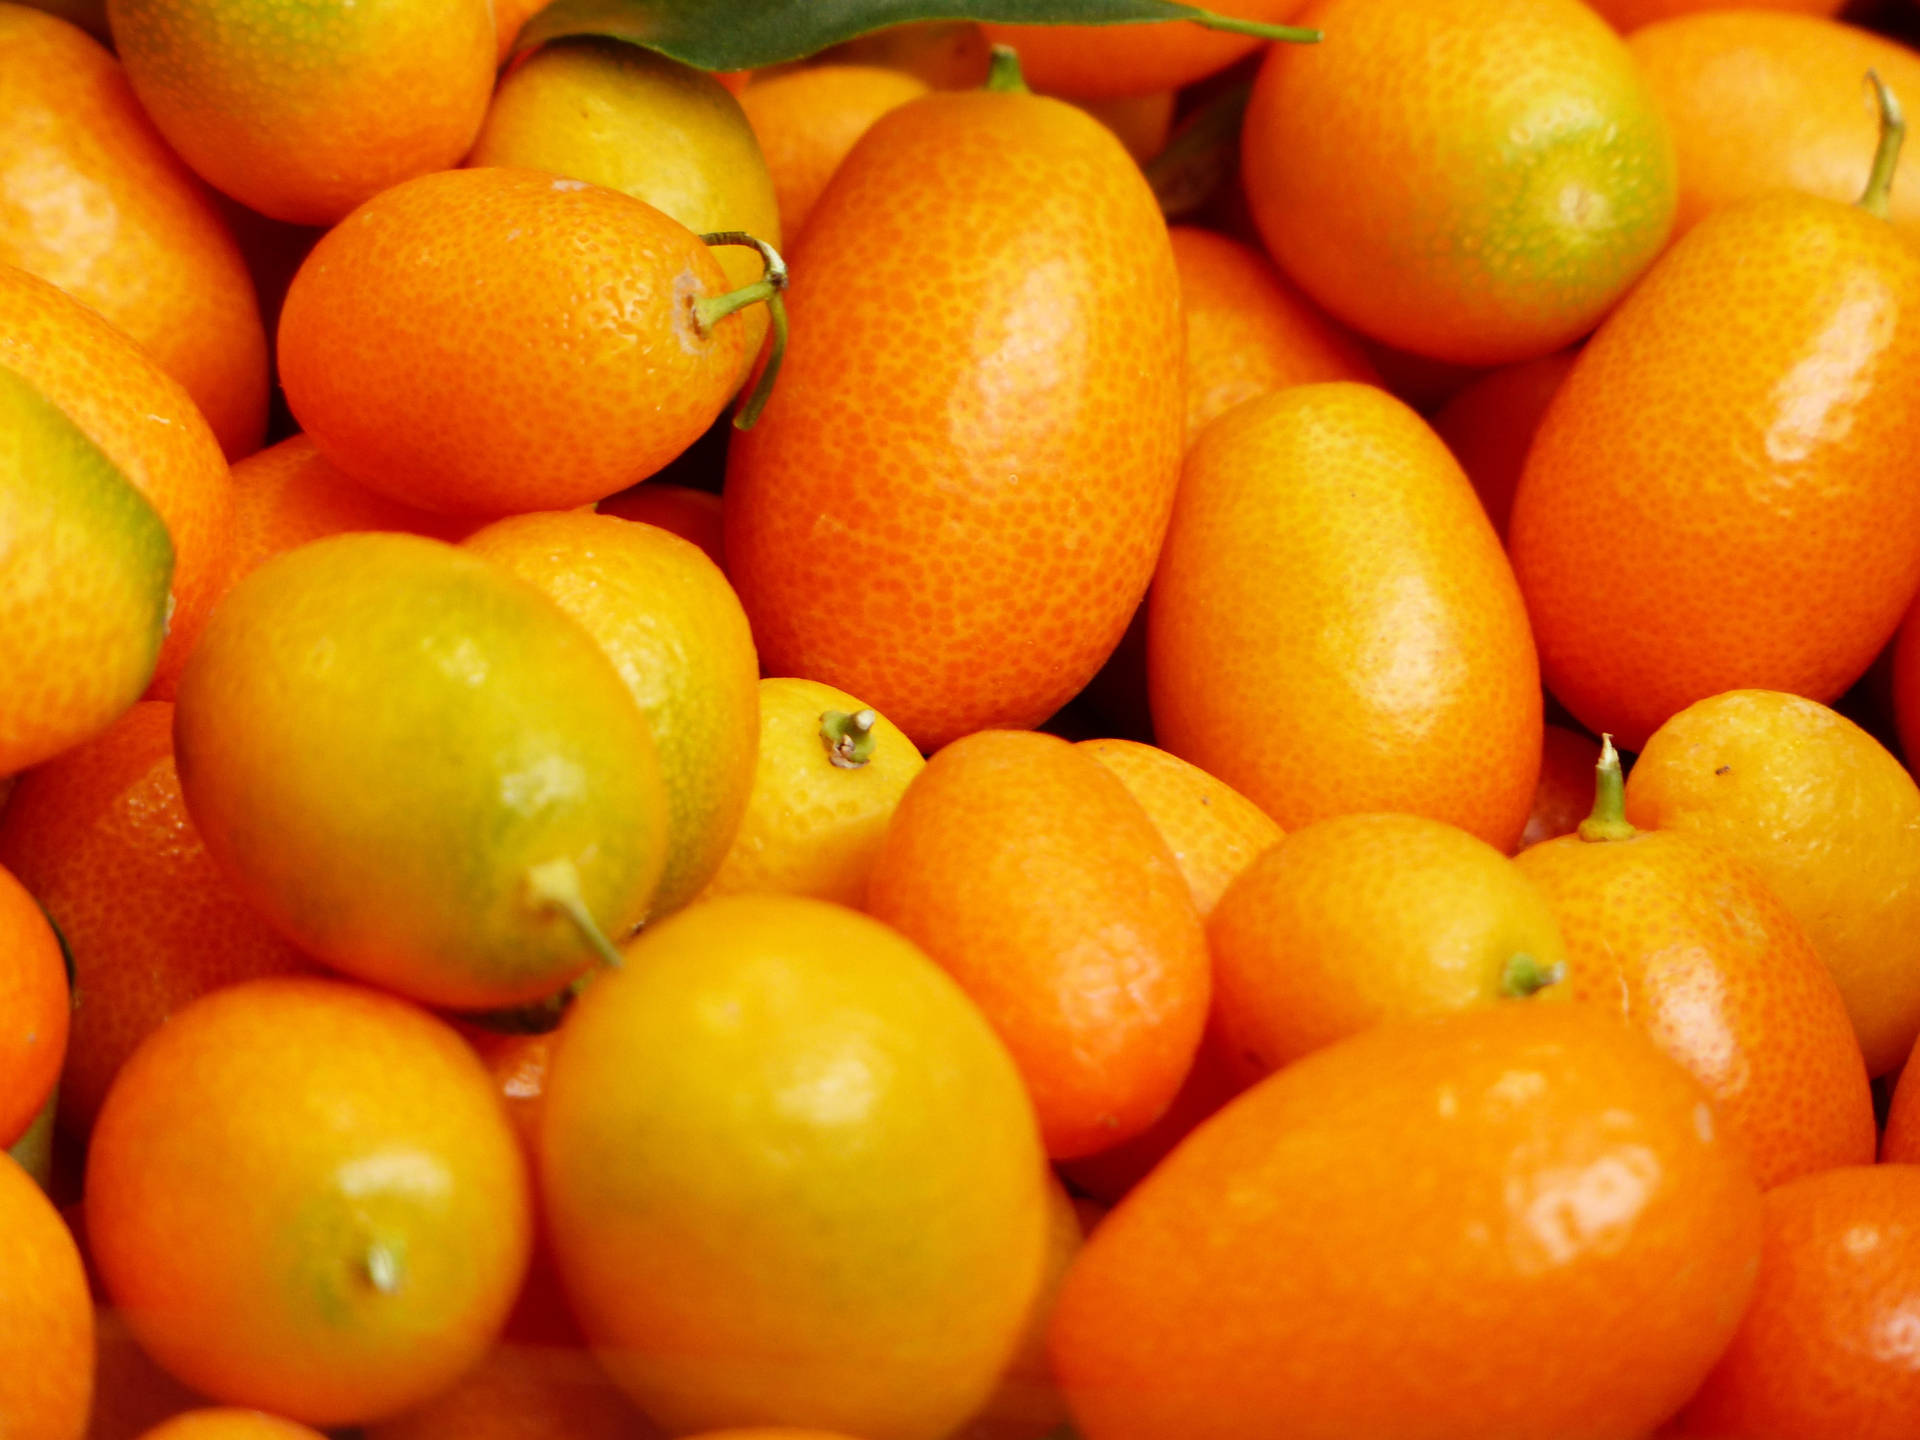 Närbildpå Kumquat-frukter. Wallpaper